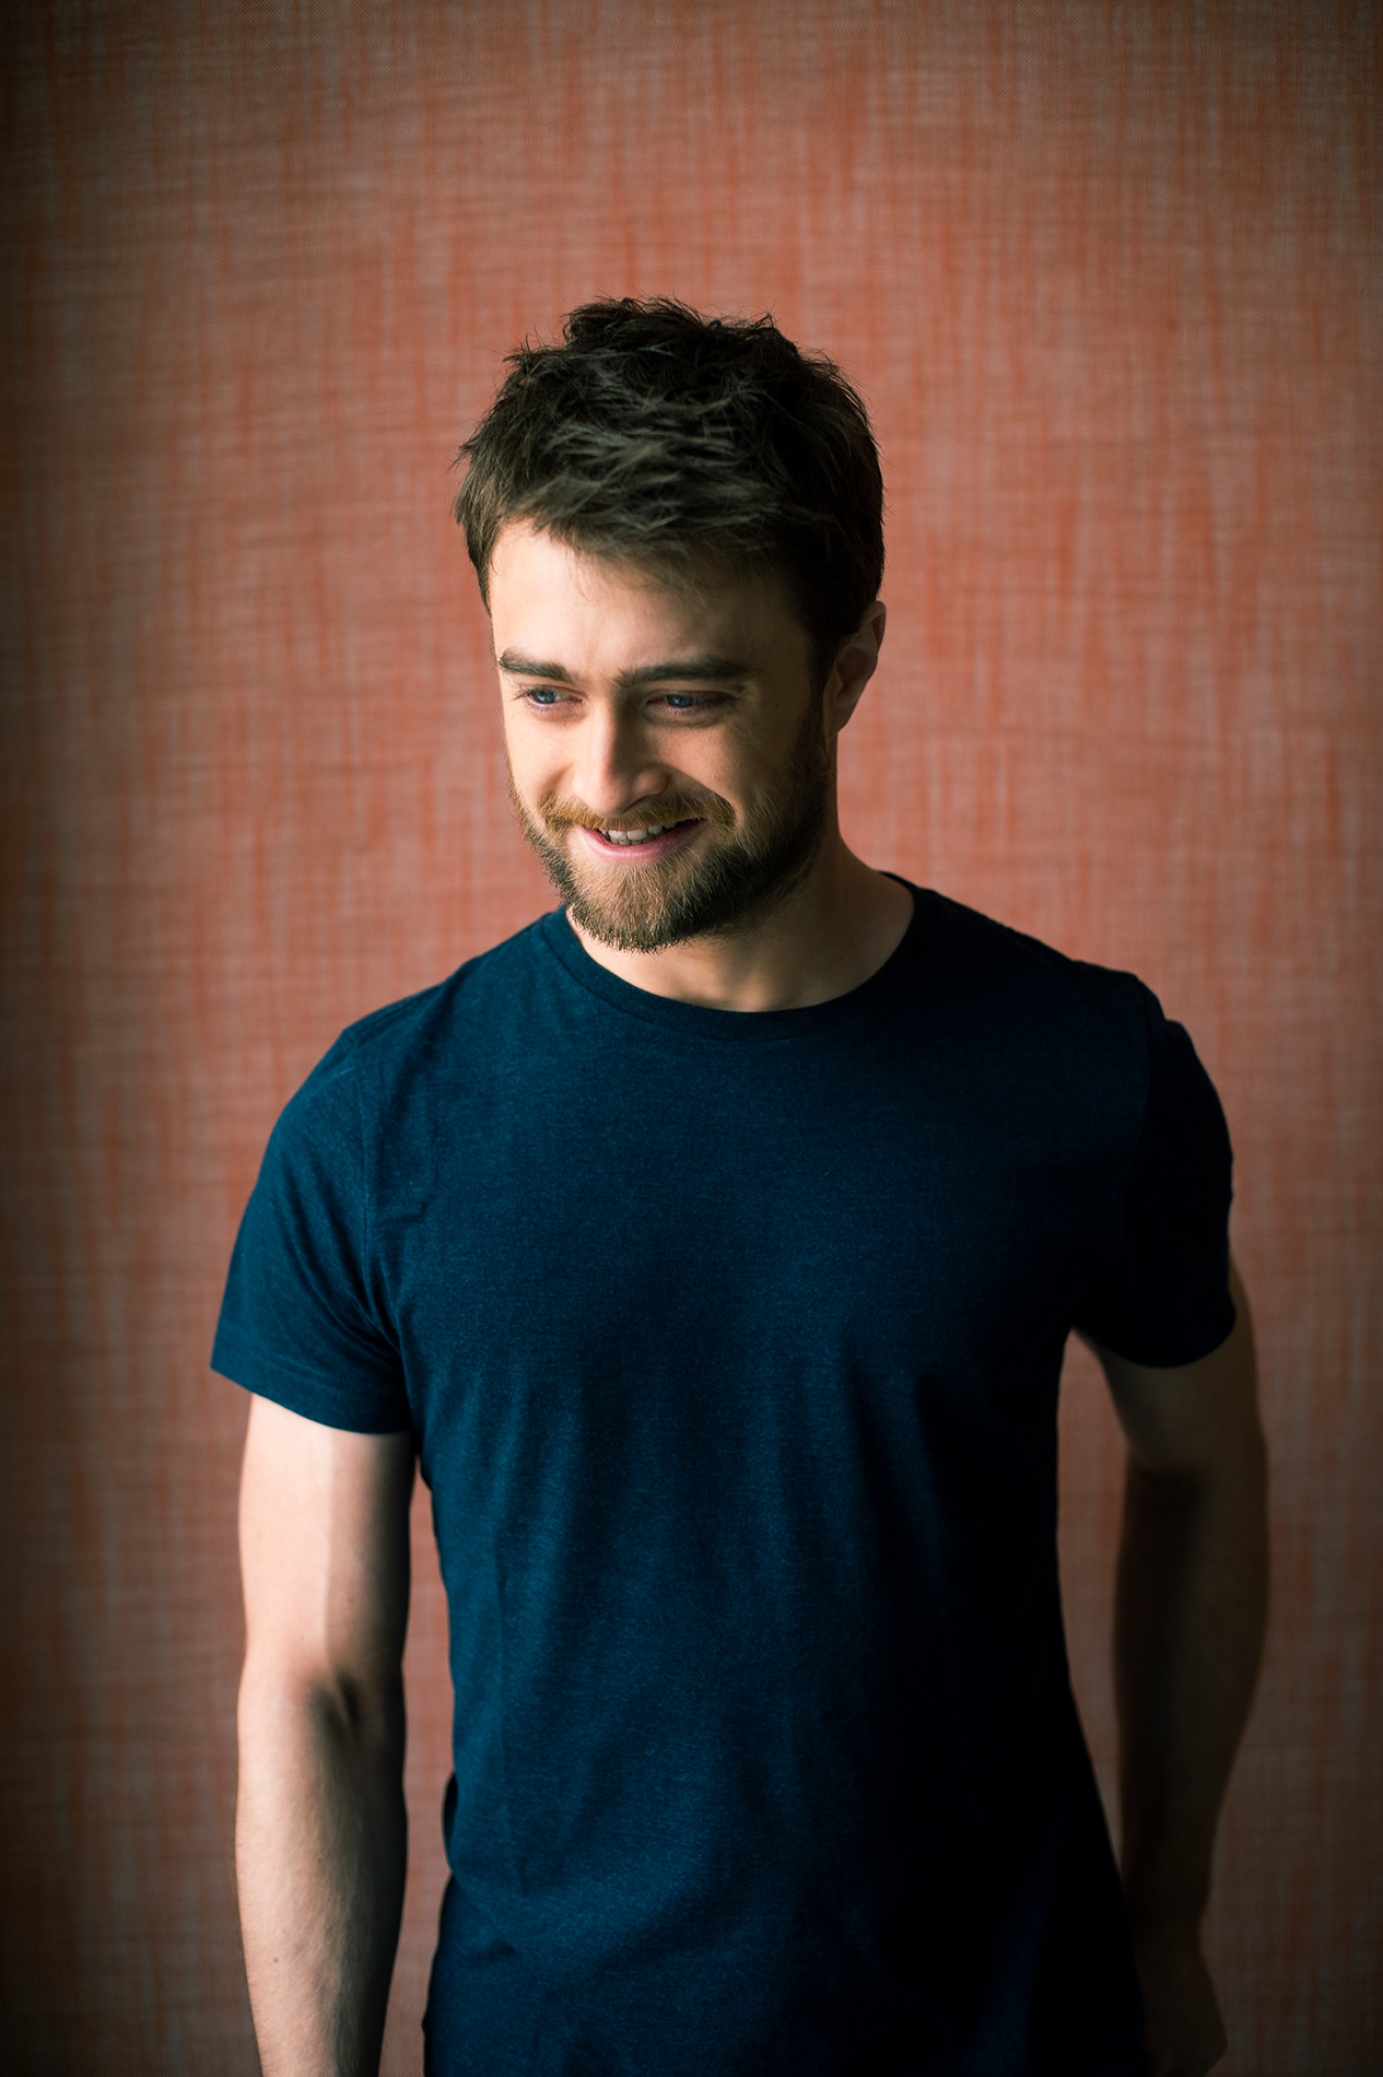 Daniel Radcliffe portrait photos